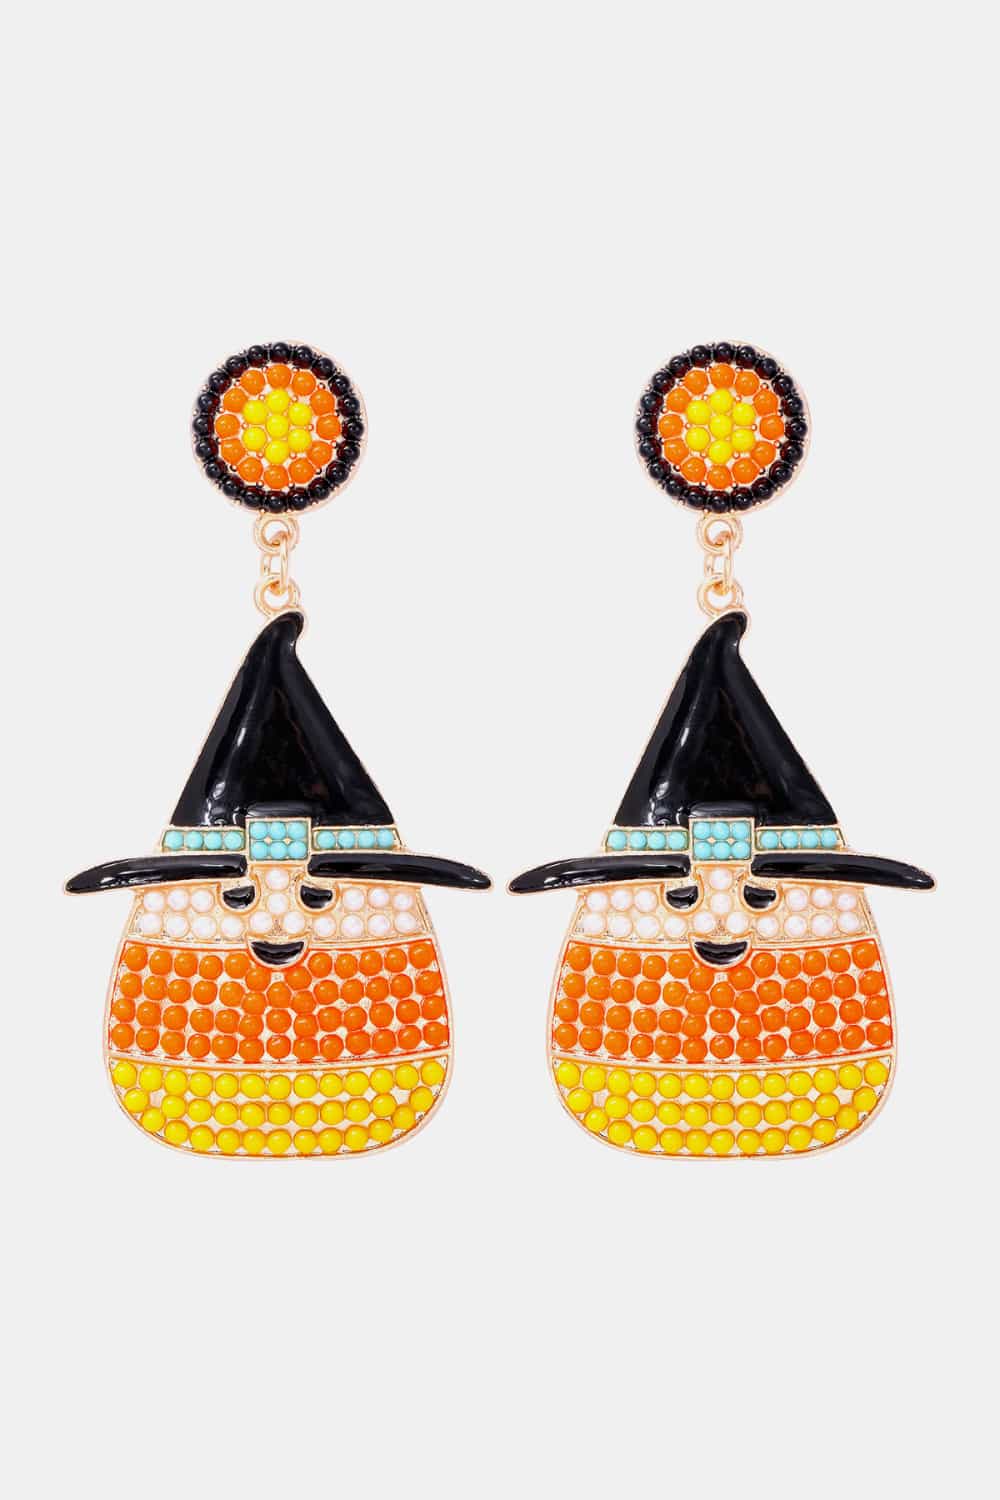 Witch’s Hat Shape Synthetic Pearl Dangle Earrings - Orange / One Size - Women’s Jewelry - Earrings - 2 - 2024